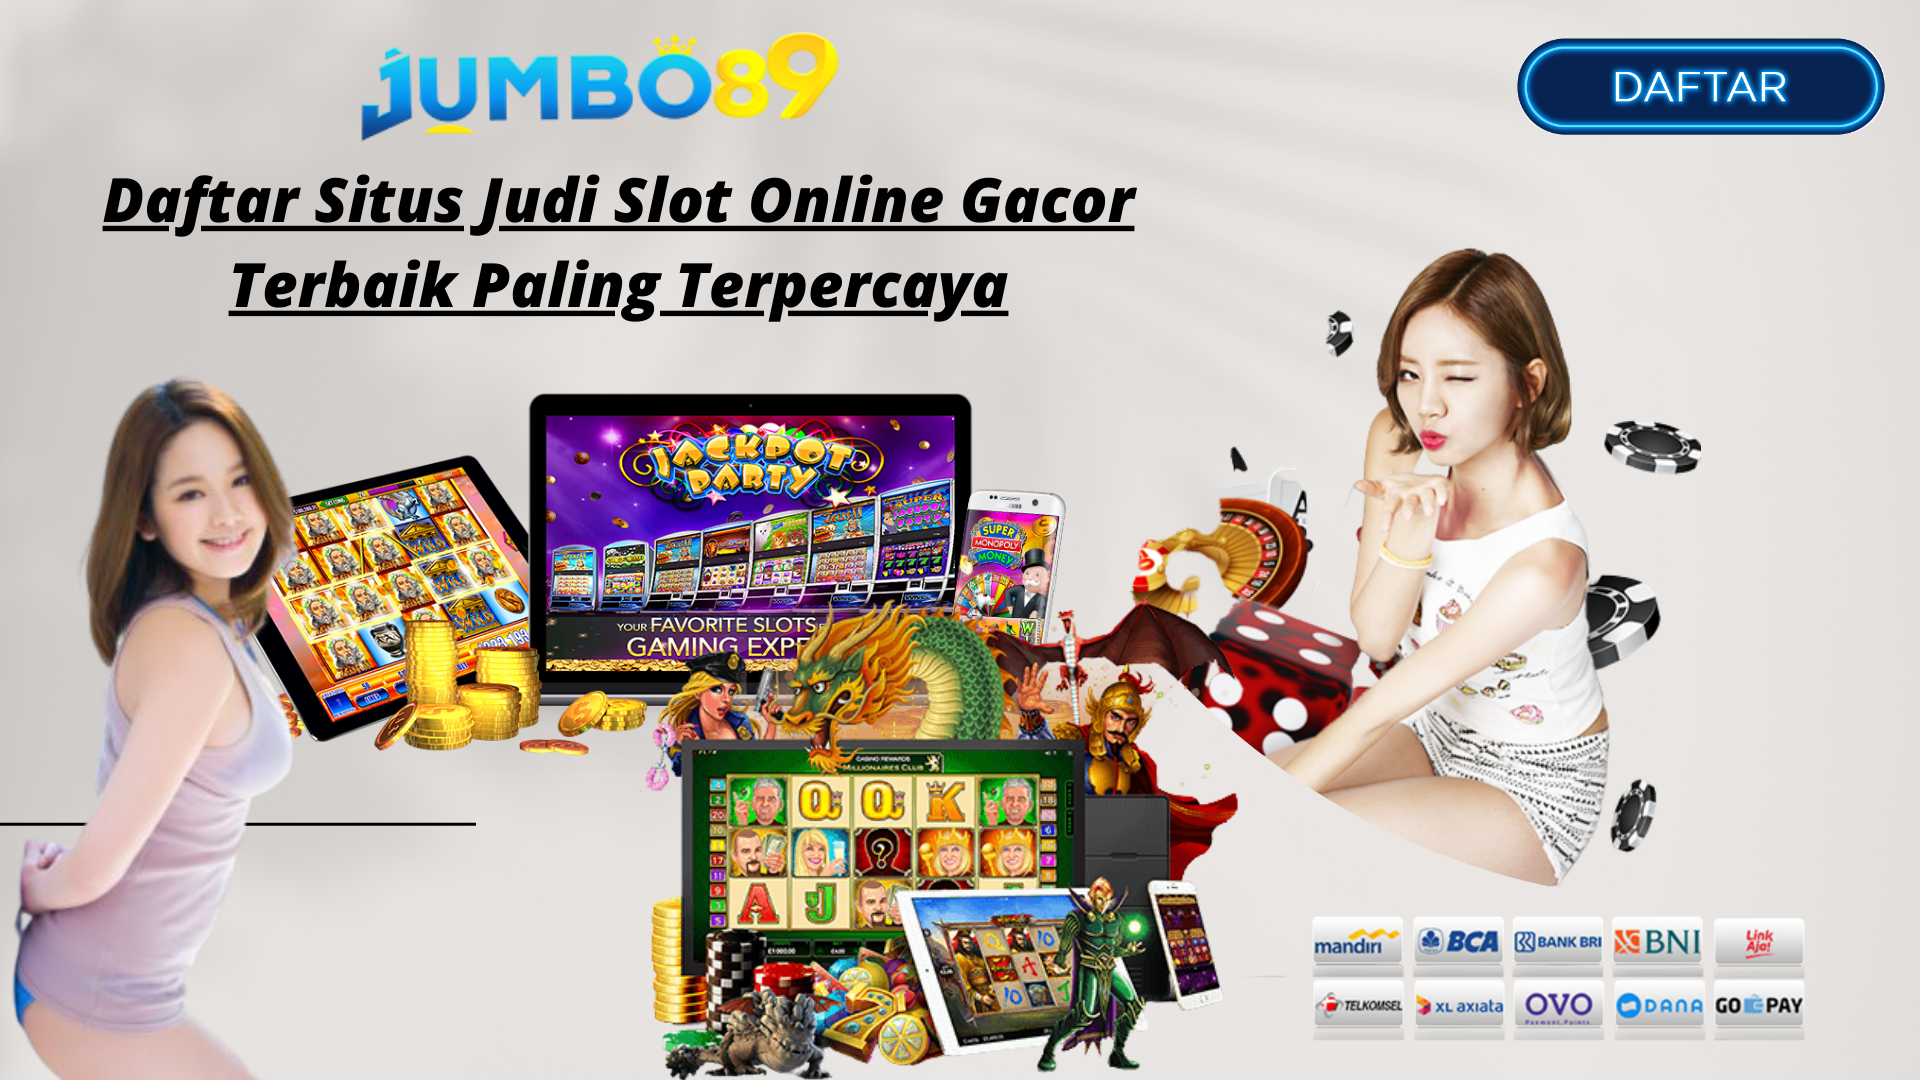 Daftar Situs Judi Slot Online Gacor Terbaik Paling Terpercaya Jumbo89